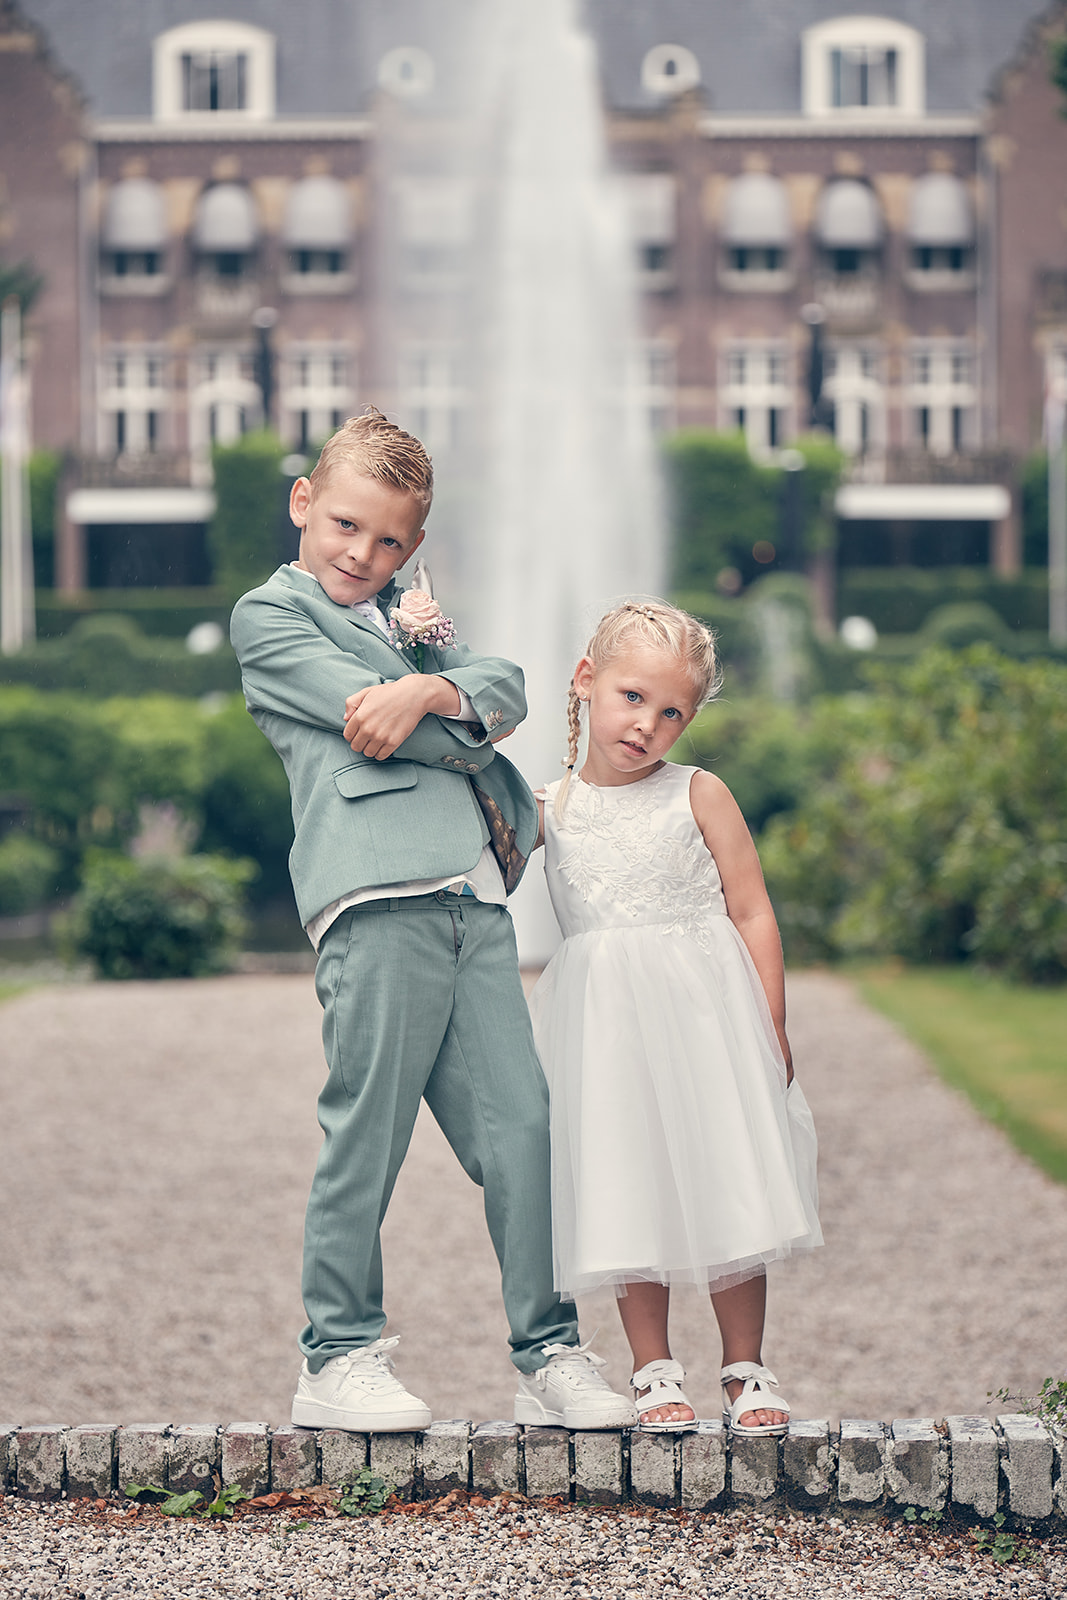 Trouwfotograaf Kasteel Hooge Vuursche in Baarn - De bruidsfotografie van Dennis en Kim - fotoshoot